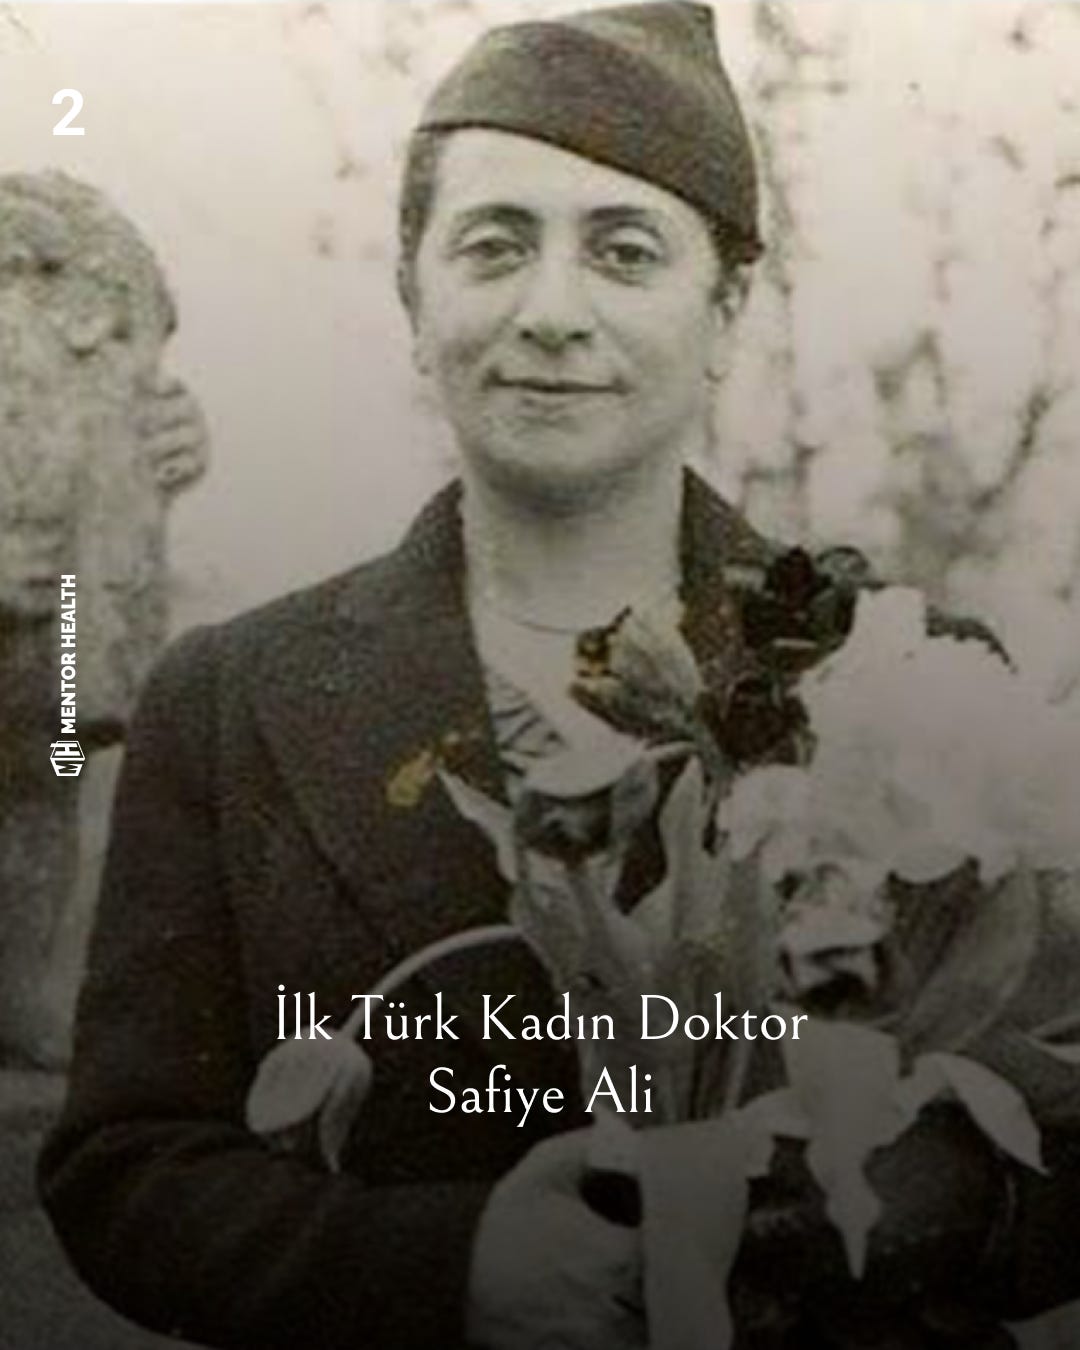 ilk türk kadın doktor safiye ali'nin fotoğrafı